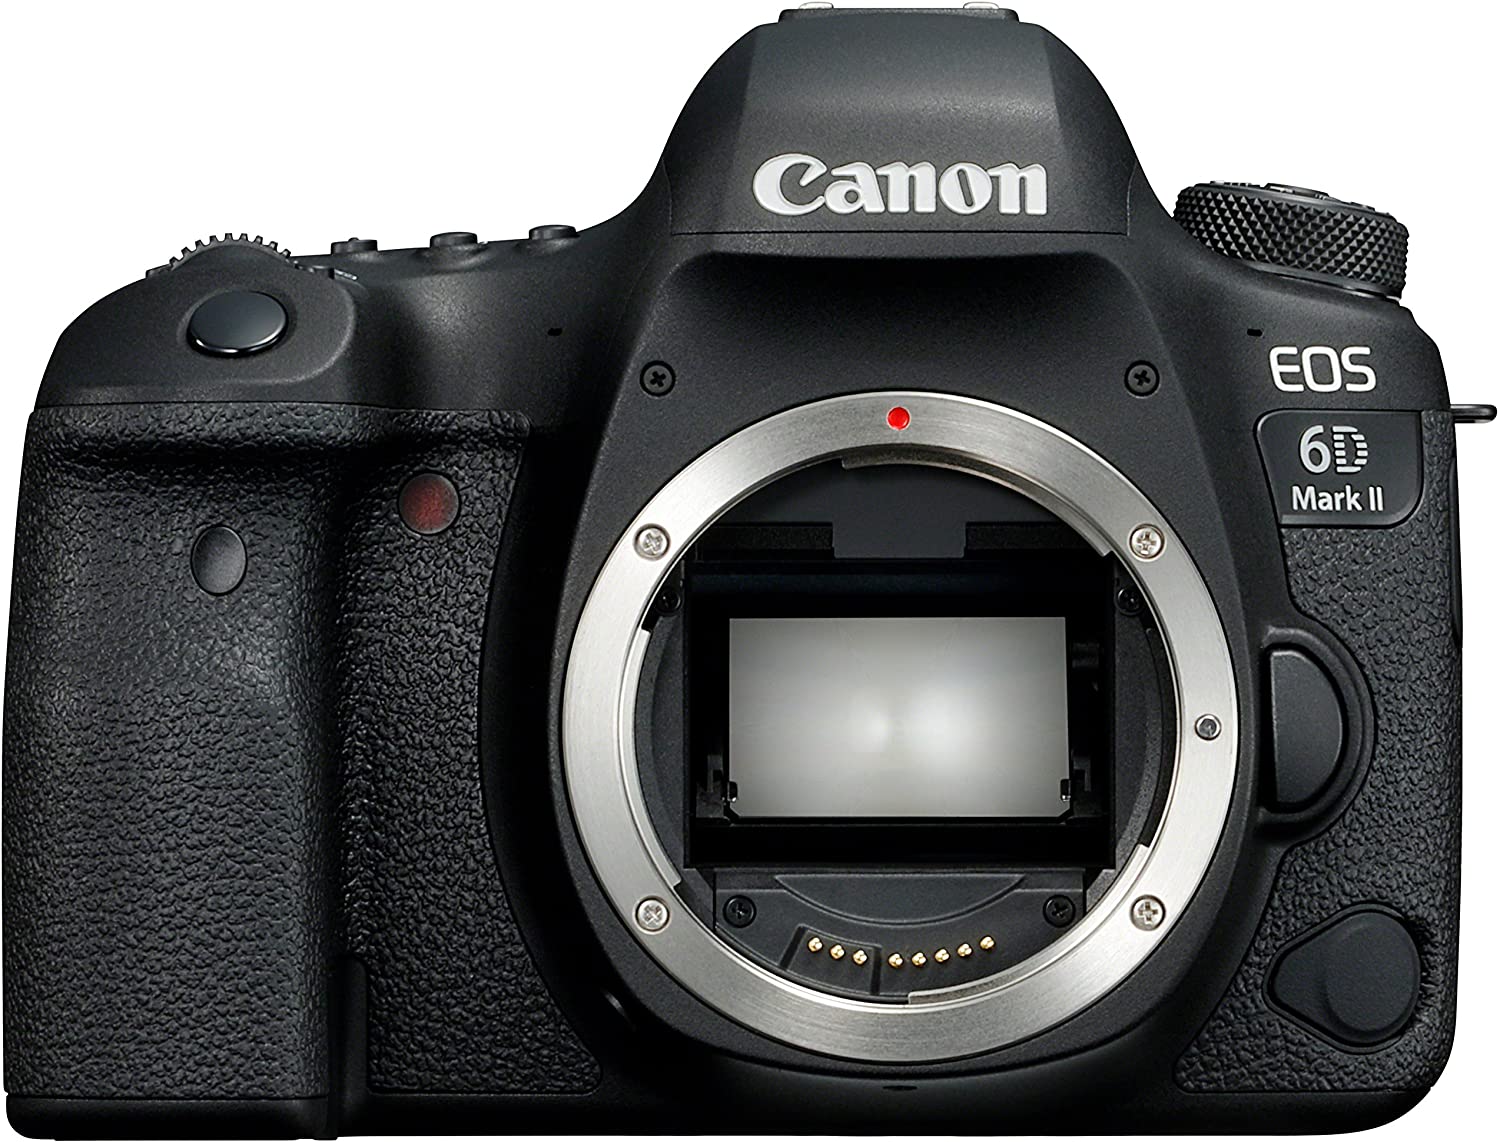 Le Canon Eos 6D Mark II, un excellent choix quand on se lance dans la photo de voyage